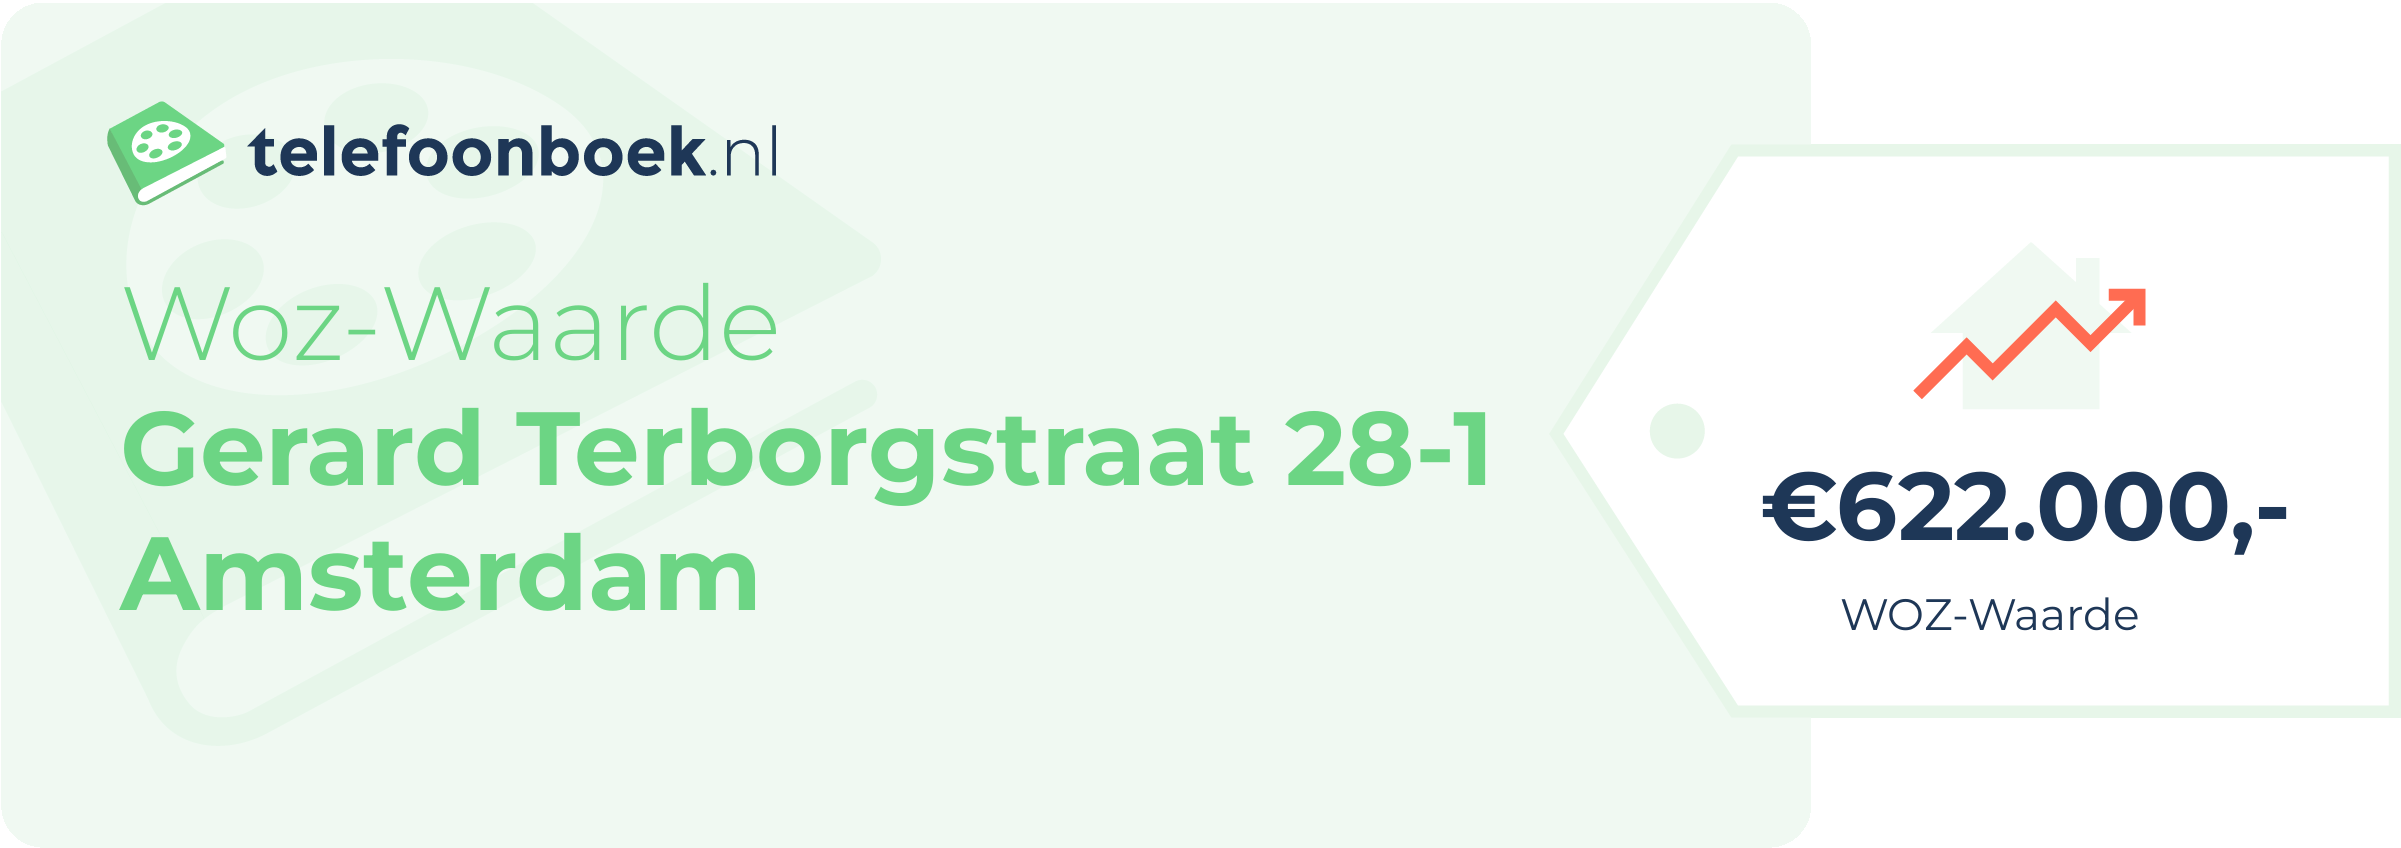 WOZ-waarde Gerard Terborgstraat 28-1 Amsterdam